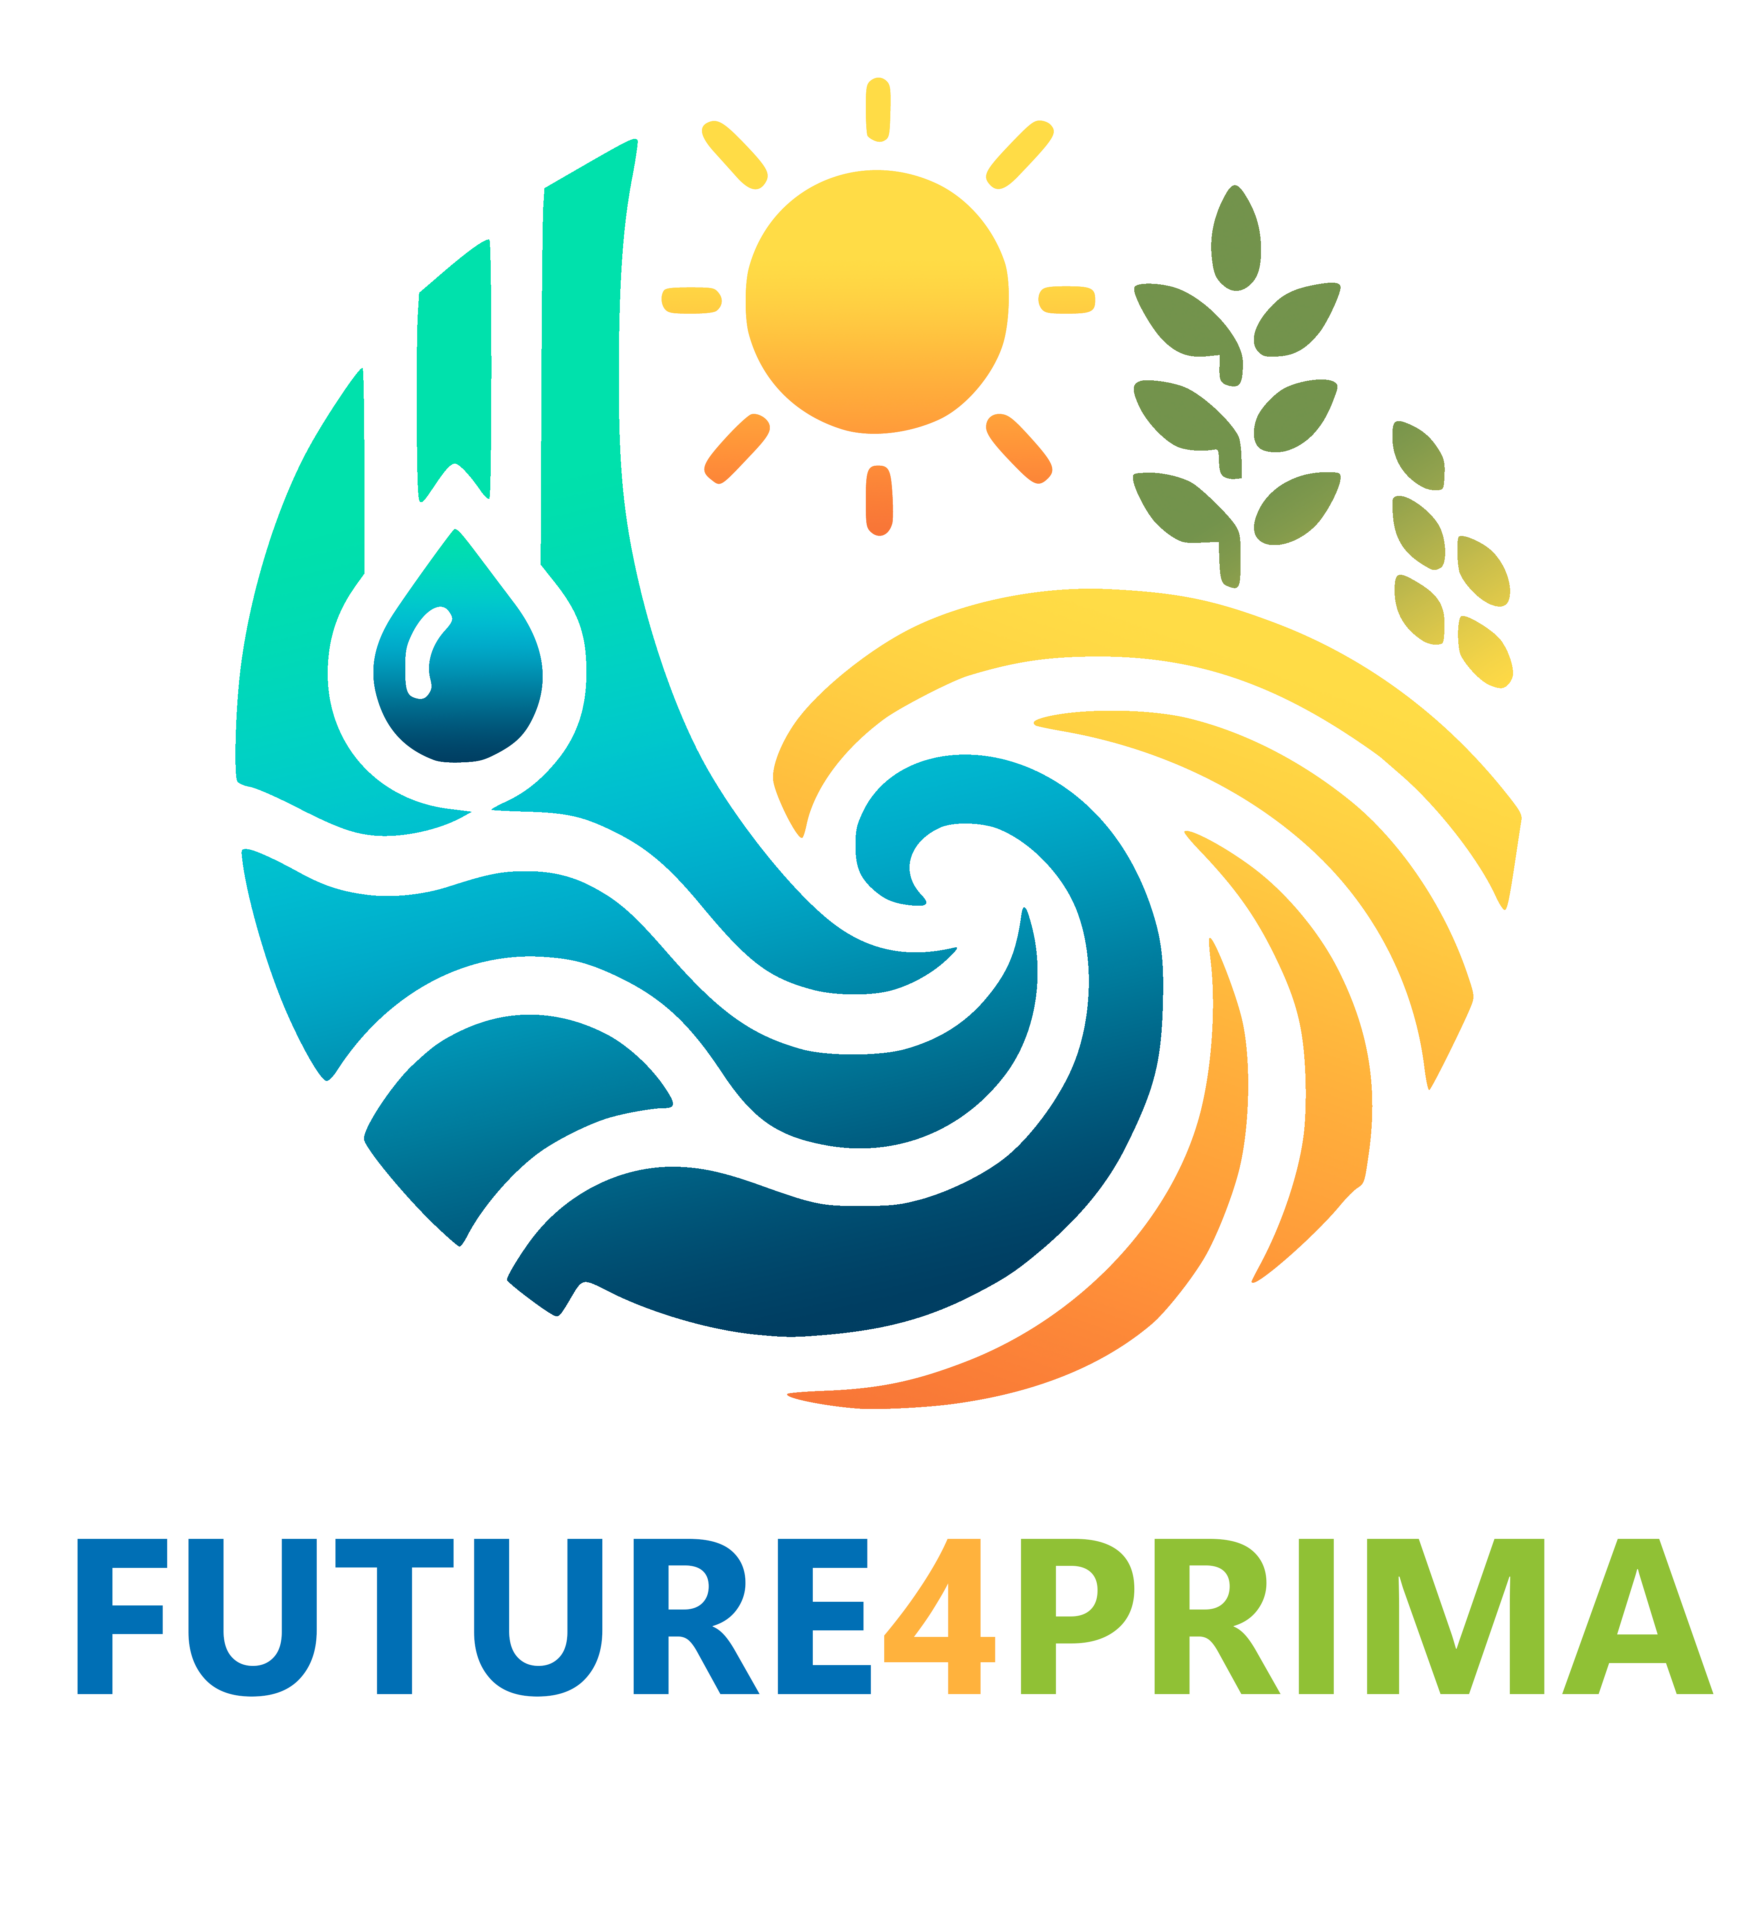 FUTURE4PRIMA